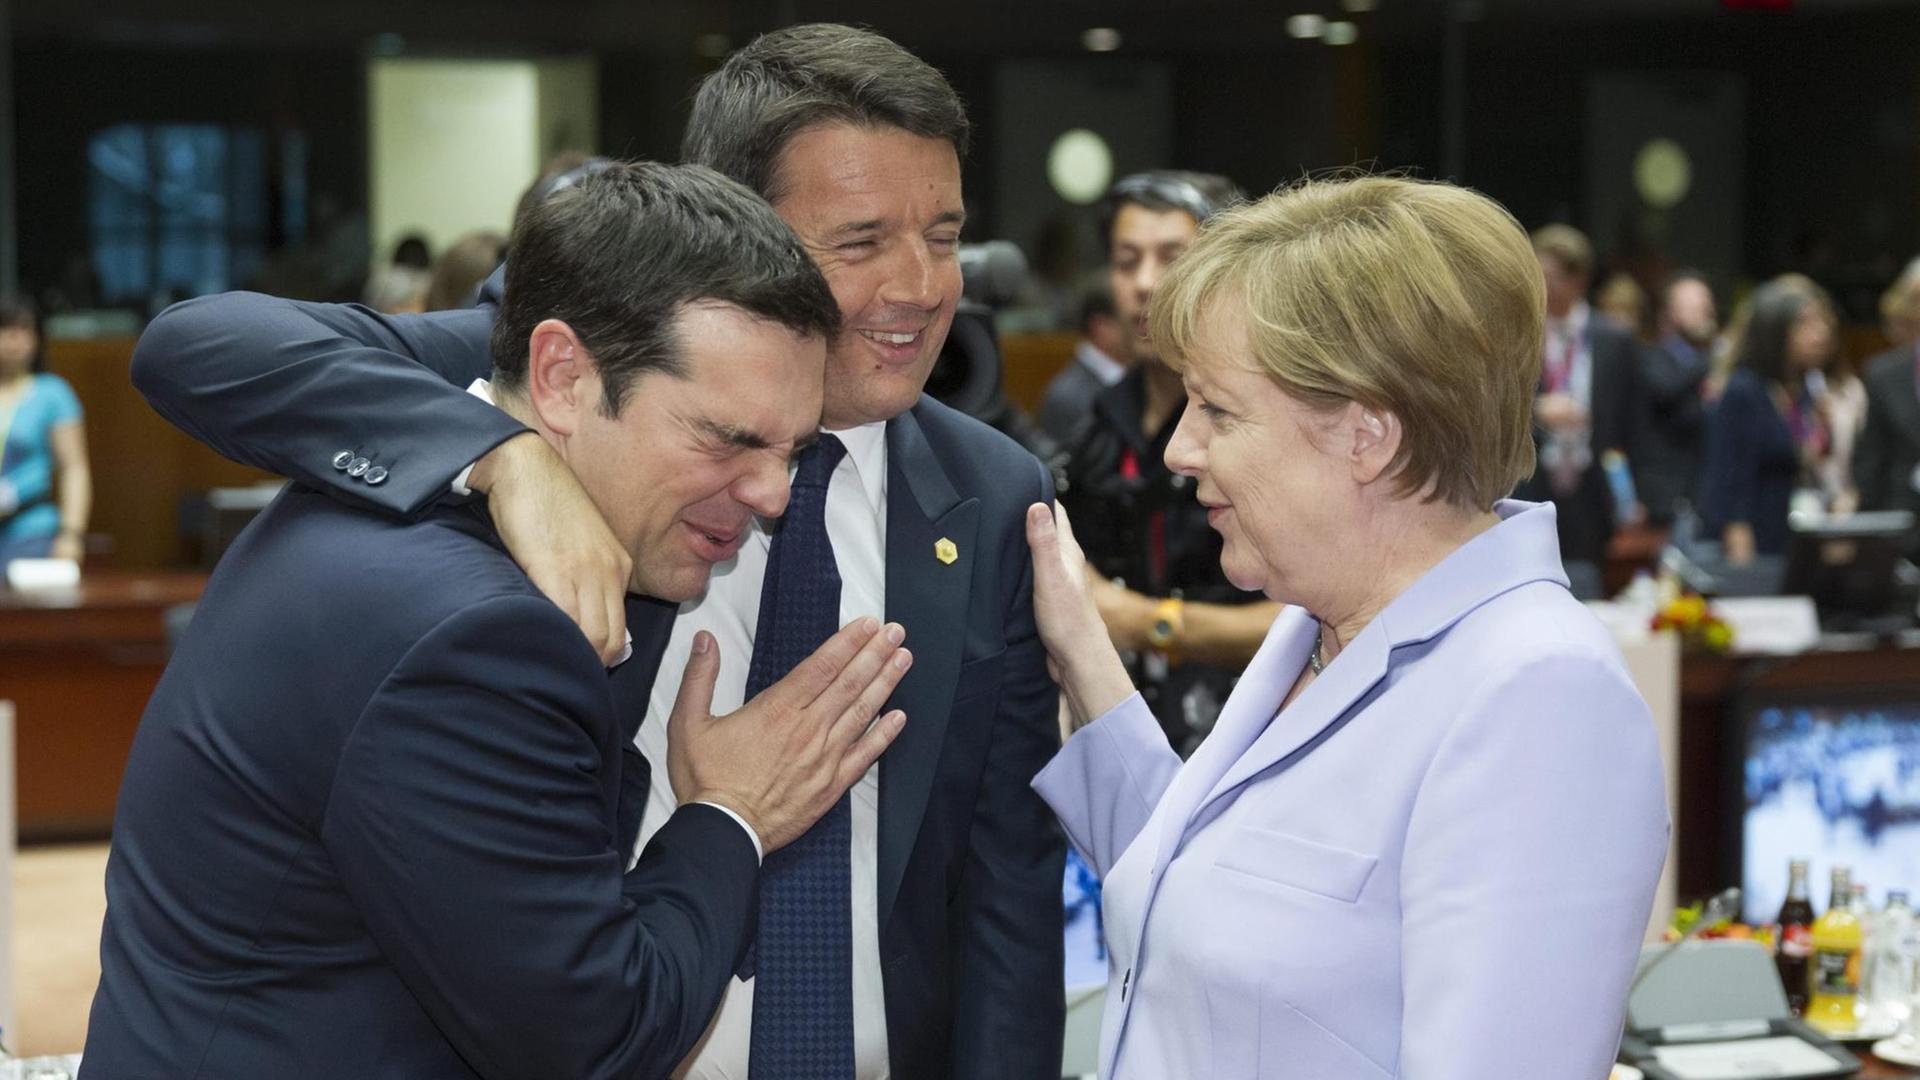 Italiens Ministerpräsident Renzi nimmt auf dem EU-Gipfel in Brüssel (25.6.15) seinen griechischen Amtskollegen zur Seite. Bundeskanzlerin Merkel beobachtet die Situation.